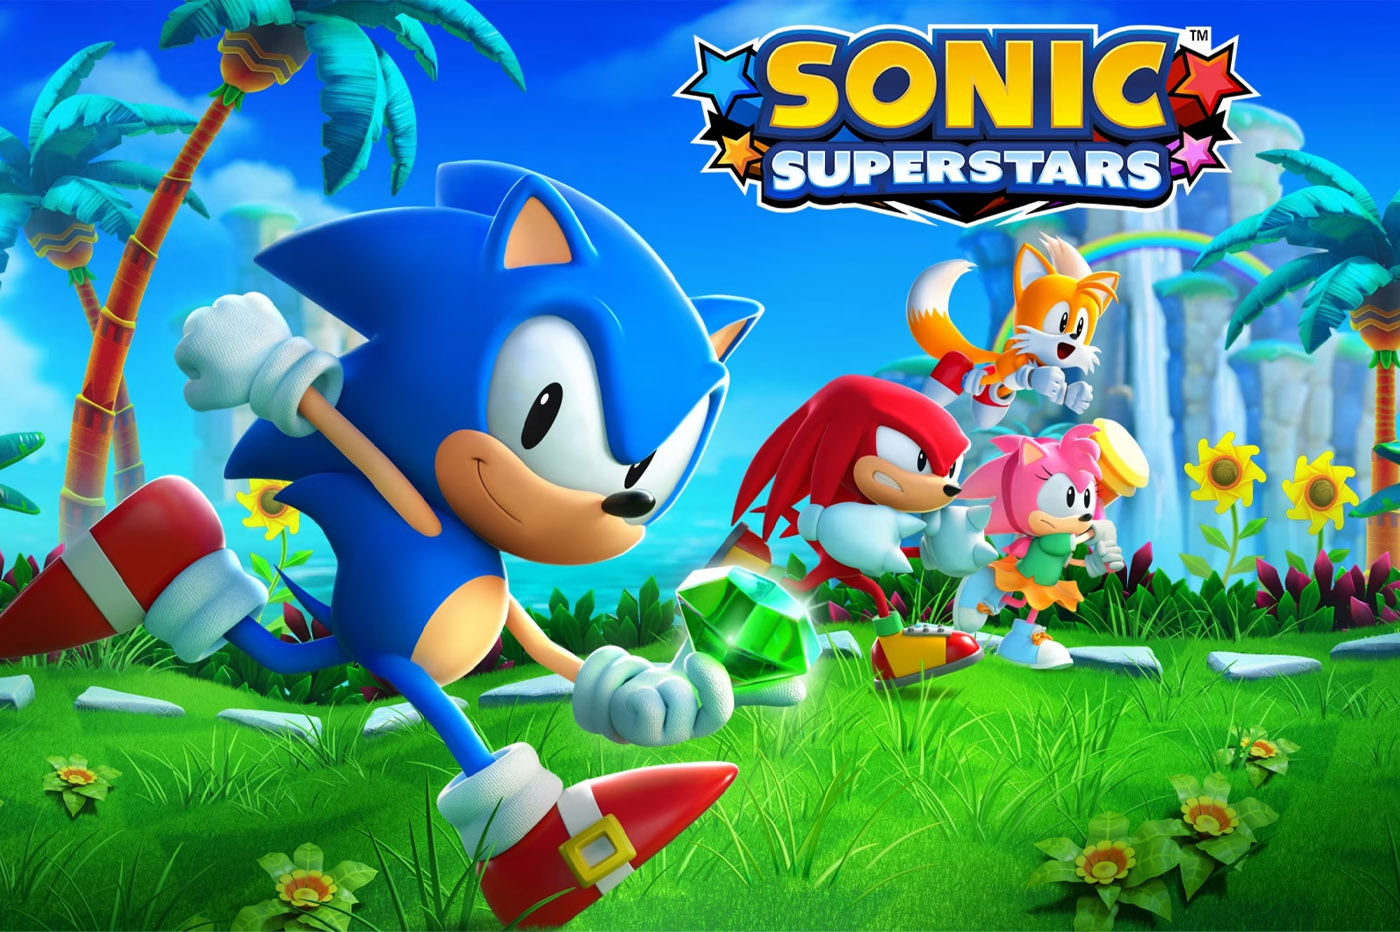 Sonic Superstars sur PS5, tous les jeux vidéo PS5 sont chez Micromania